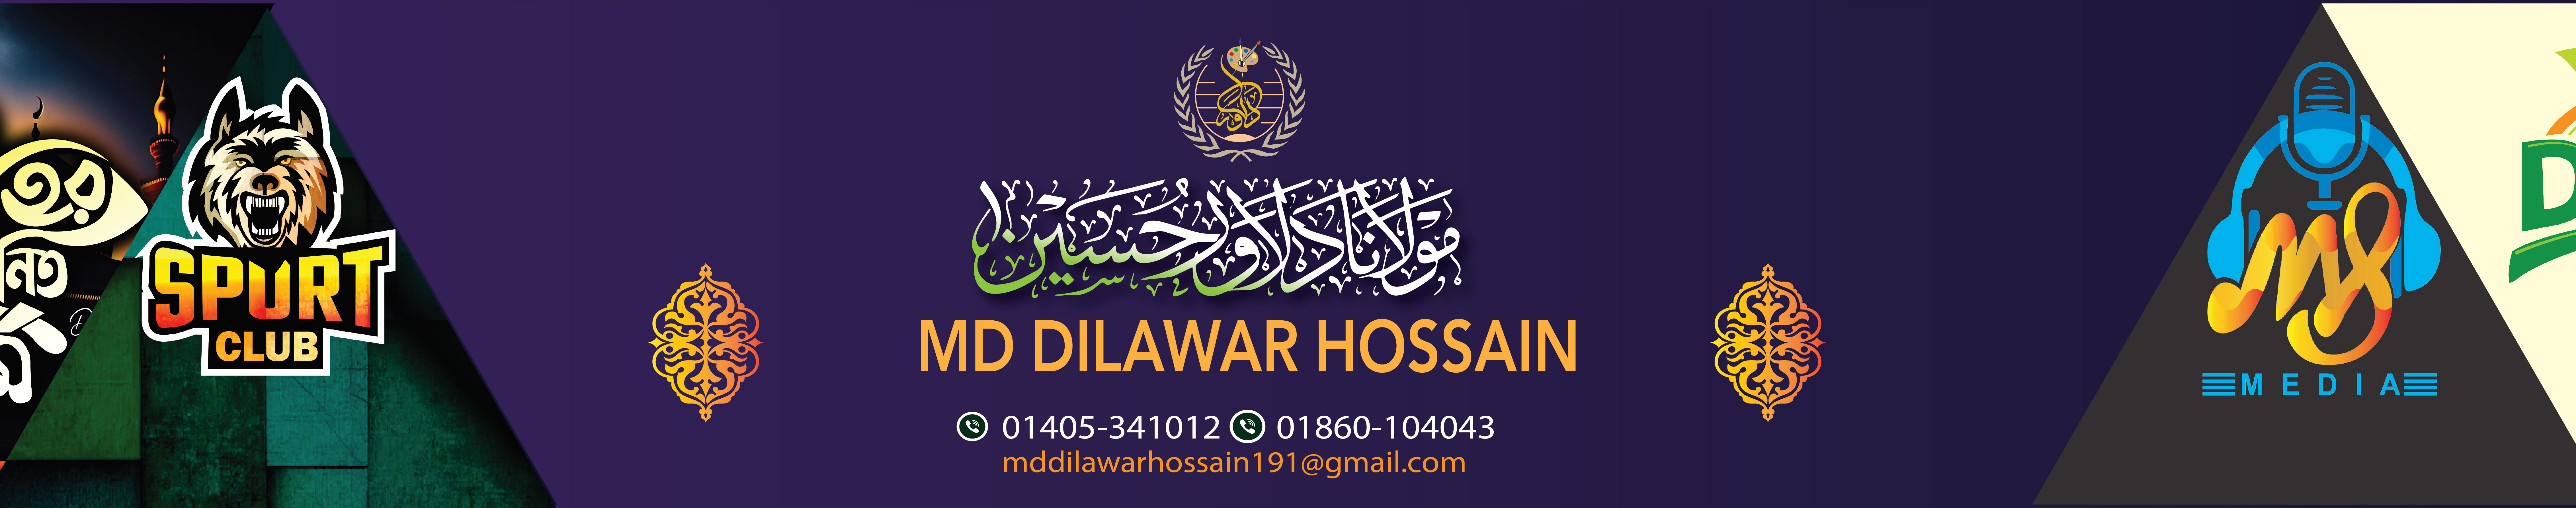 Profielbanner van Dilawar Hossain